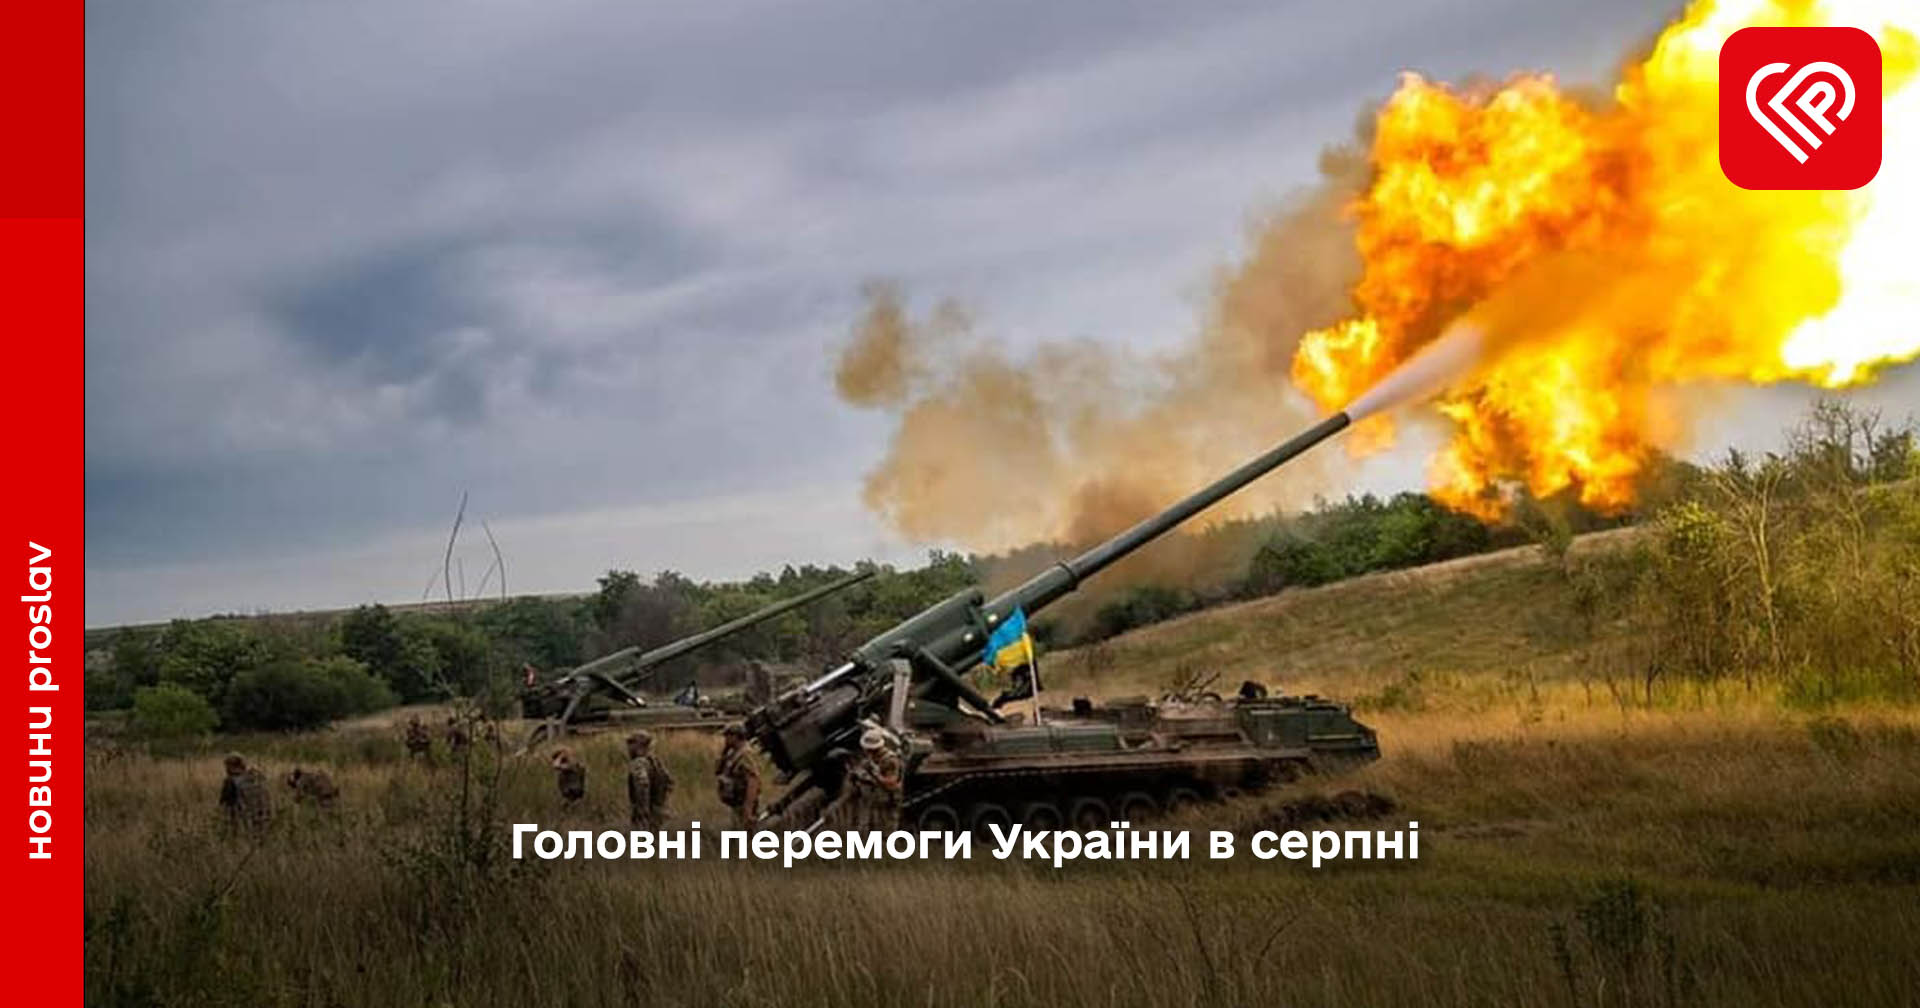 Збройні сили України продовжують героїчне протистояння з ворогом